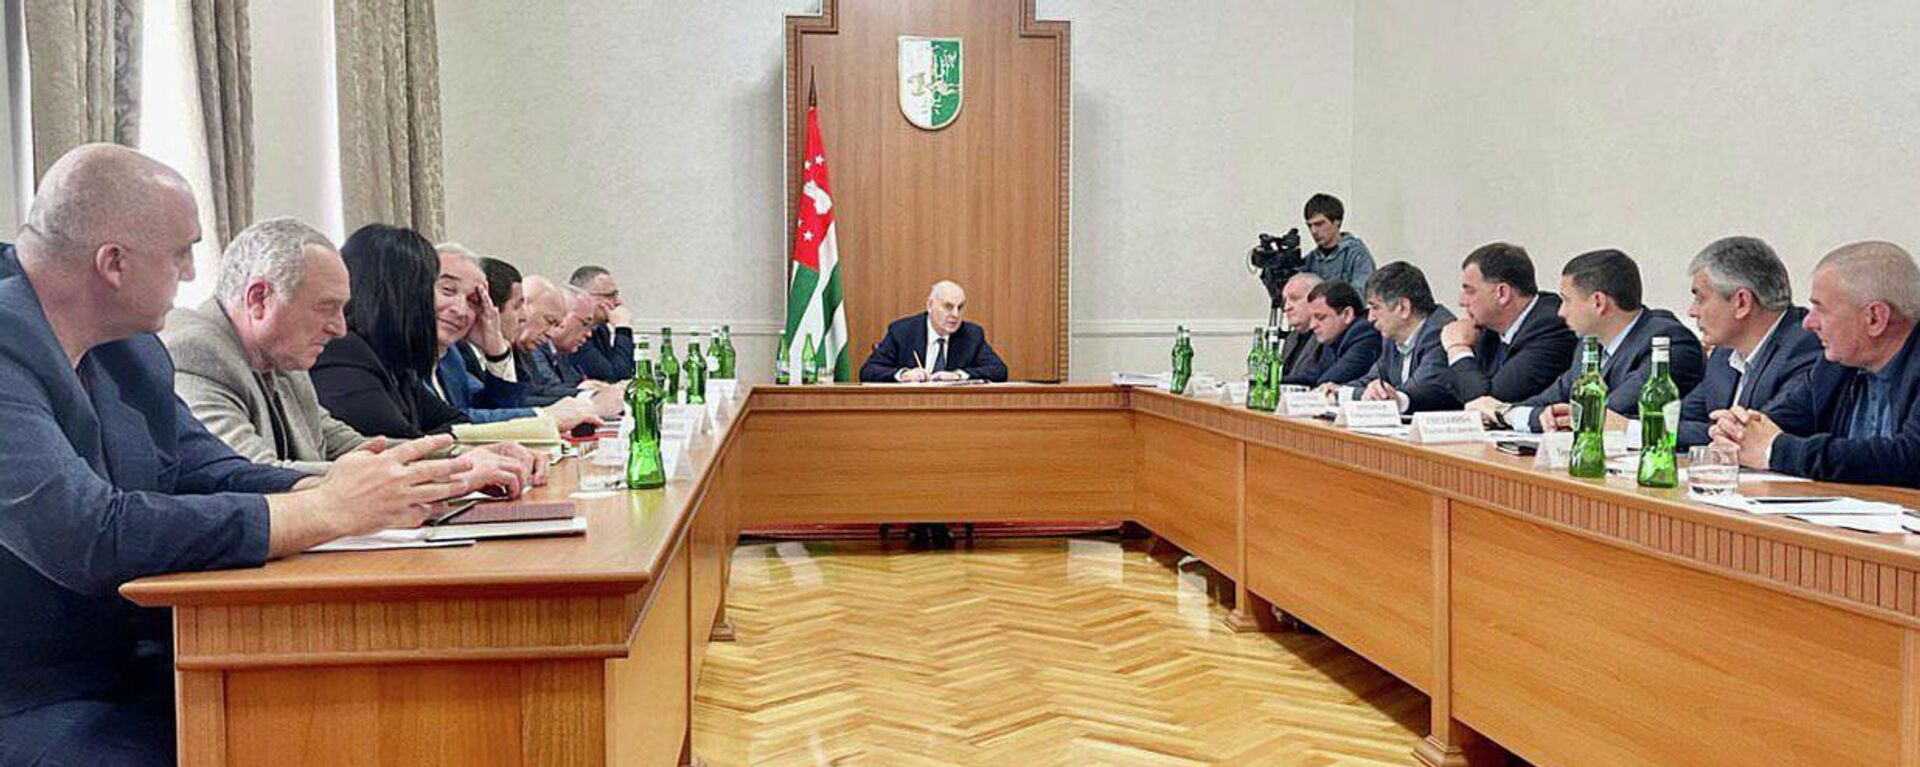 Президент Абхазии Аслан Бжания провел рабочее совещание по вопросам энергетики и незаконной добычи криптовалют  - Sputnik Абхазия, 1920, 12.05.2022